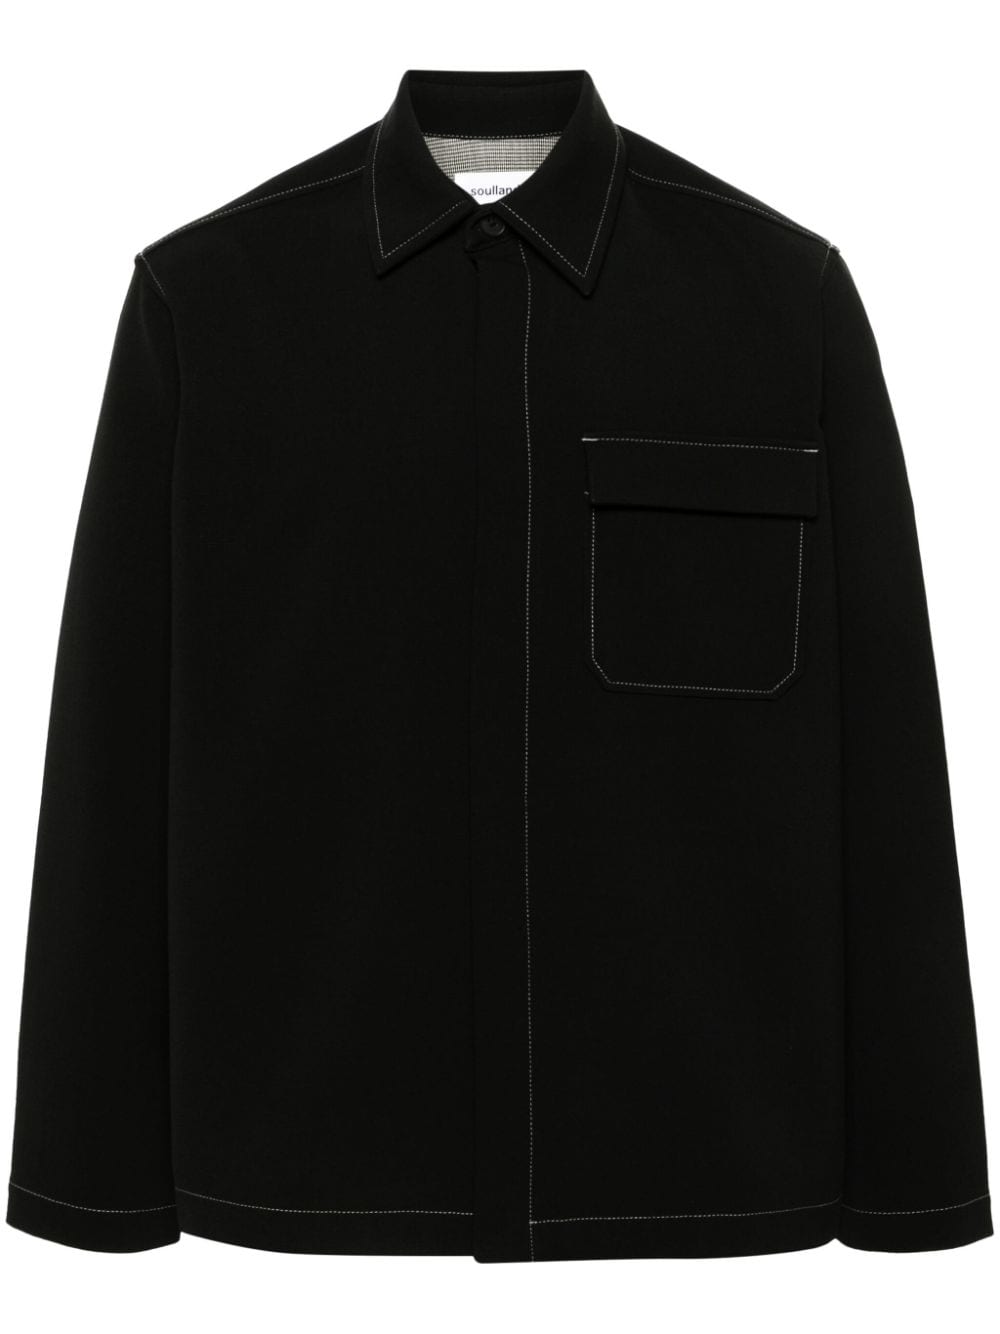 Soulland Rory Grain De Poudre Shirt In Black